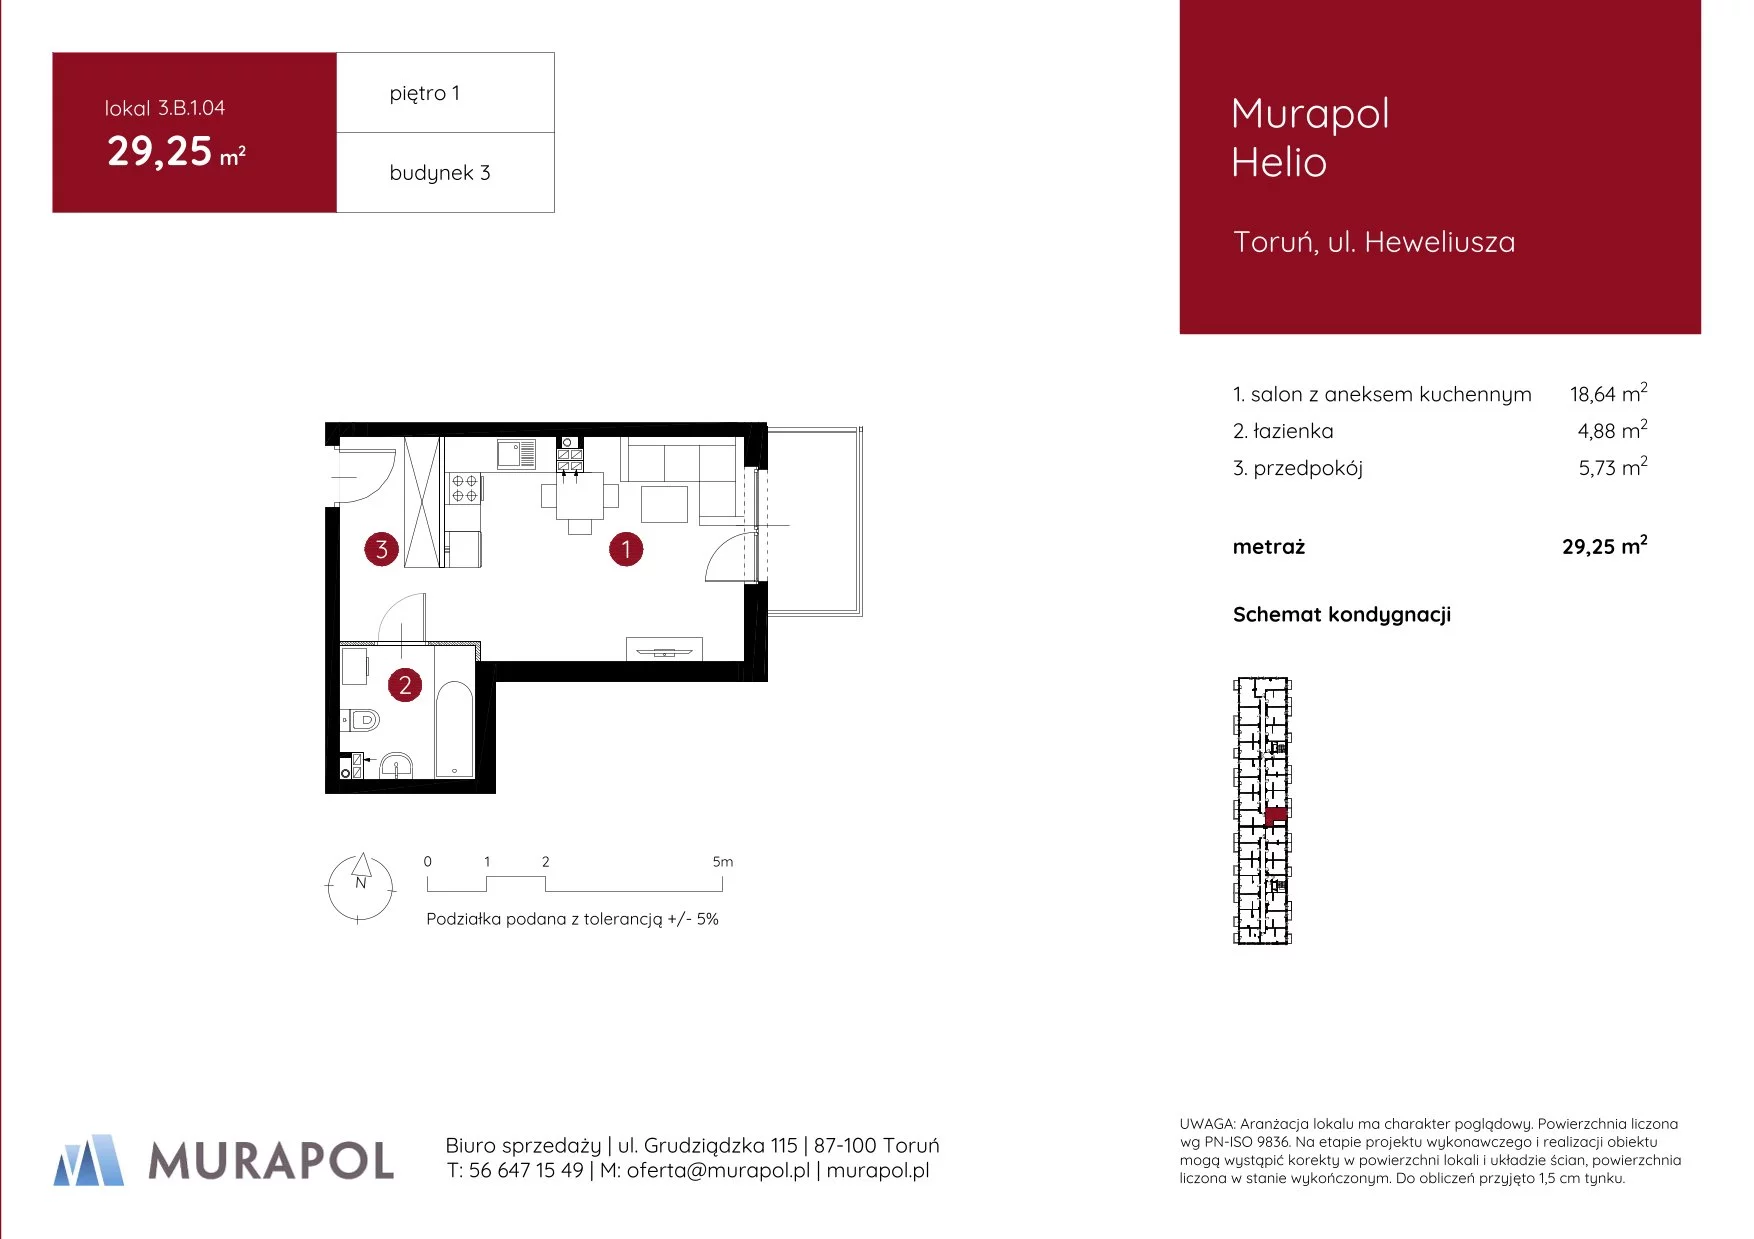 Mieszkanie 29,25 m², piętro 1, oferta nr 3.B.1.04, Murapol Helio, Toruń, Wrzosy, JAR, ul. Heweliusza